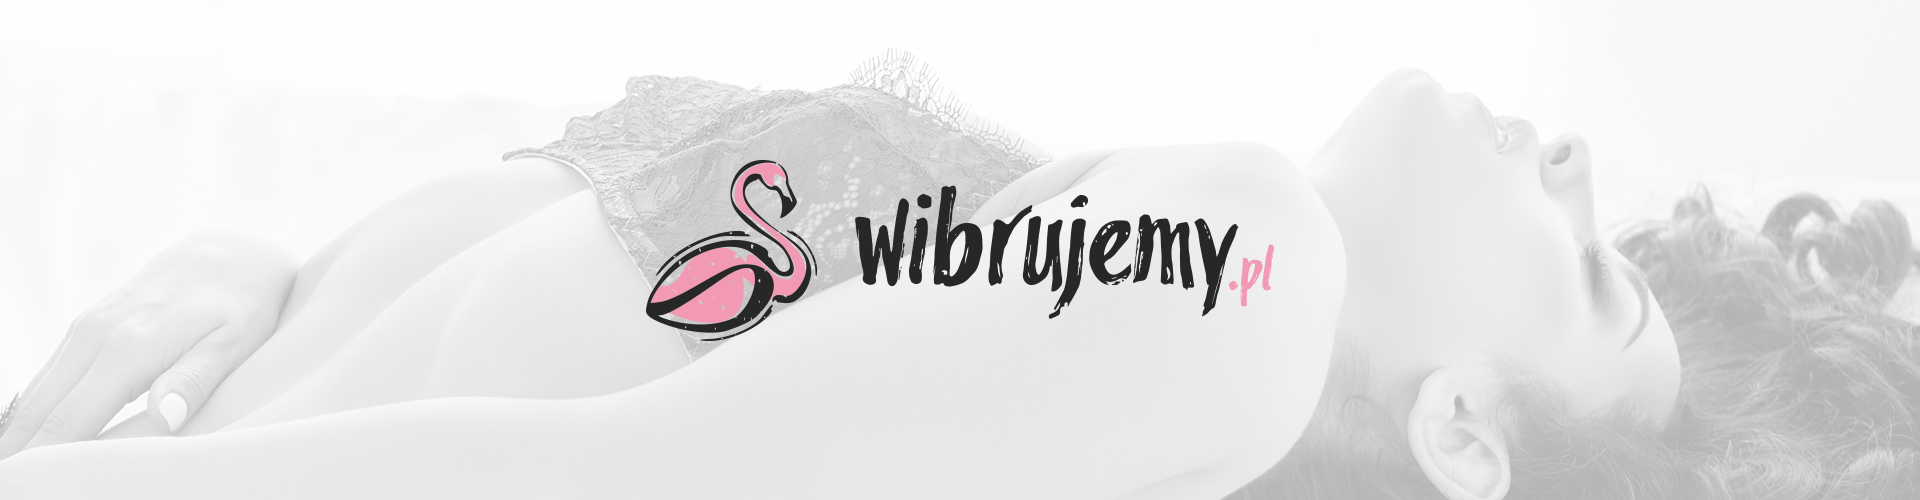 wibrujemy-1